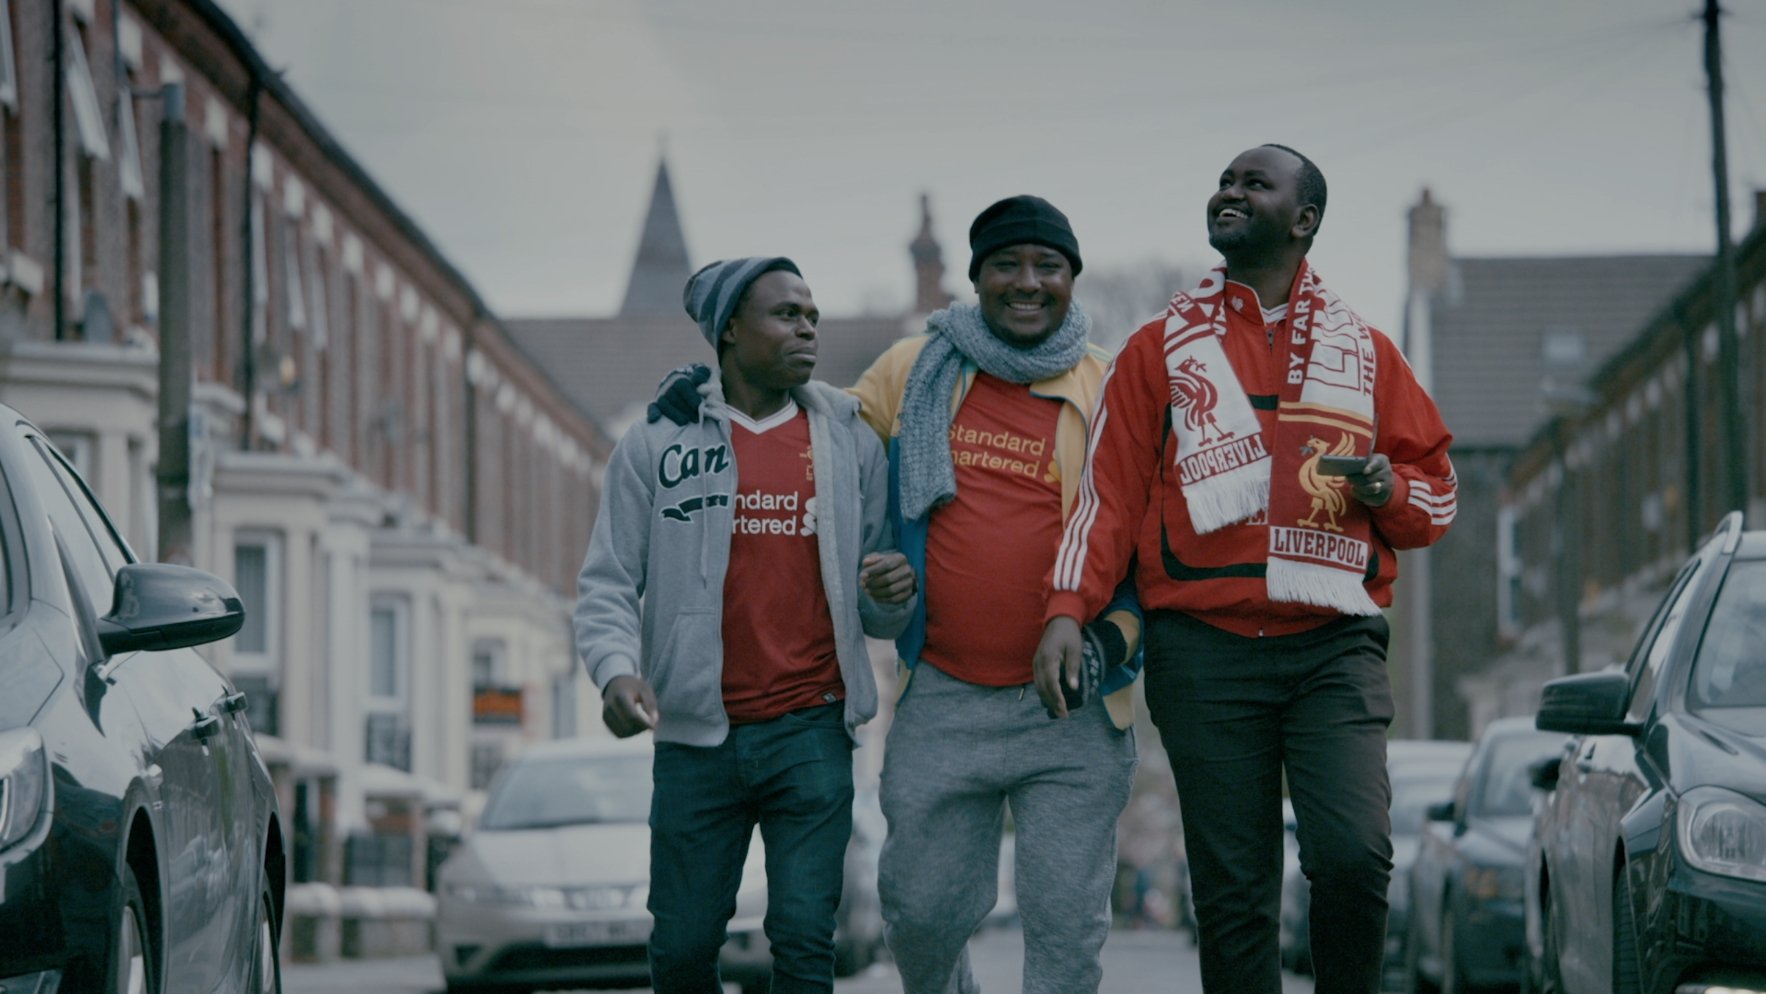 'This is football': John Carlin llança una sèrie documental sobre les bondats del futbol